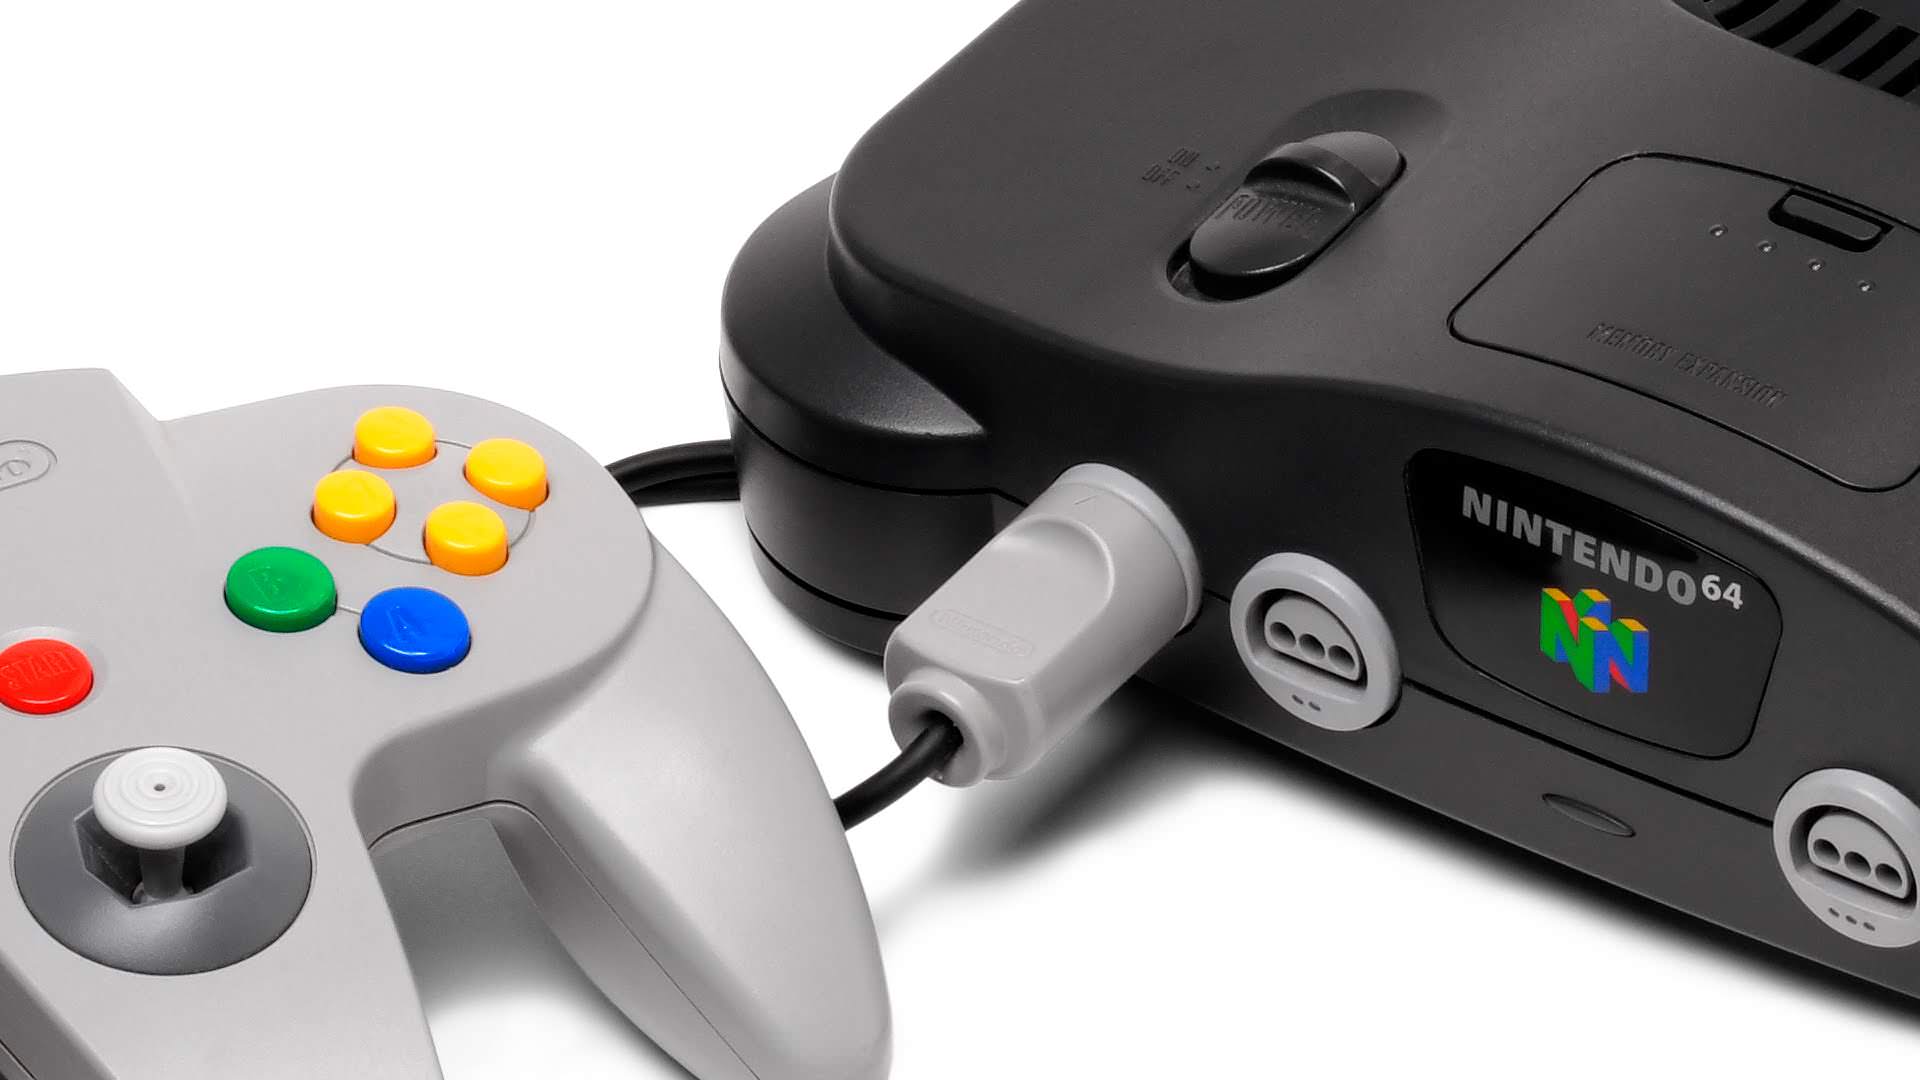 Sale a la luz el prototipo de Nintendo 64 que iba a competir con Tomb Raider y Perfect Dark